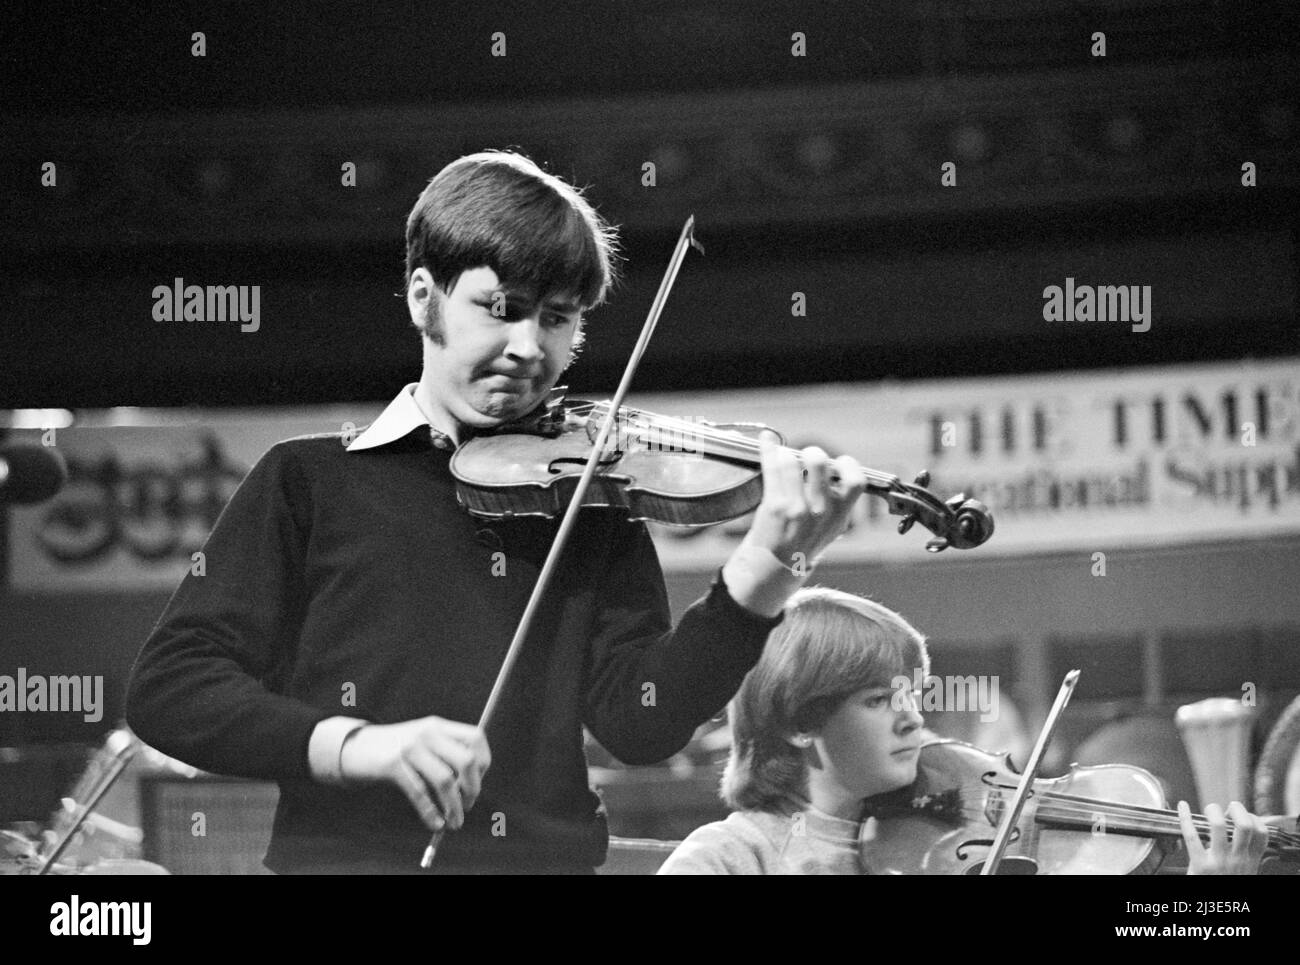 Violinista e violinista inglese Nigel Kennedy, di 26 anni, in prova per uno dei concerti Schools Prom, Royal Albert Hall, Londra, Inghilterra nel 1982. Foto Stock